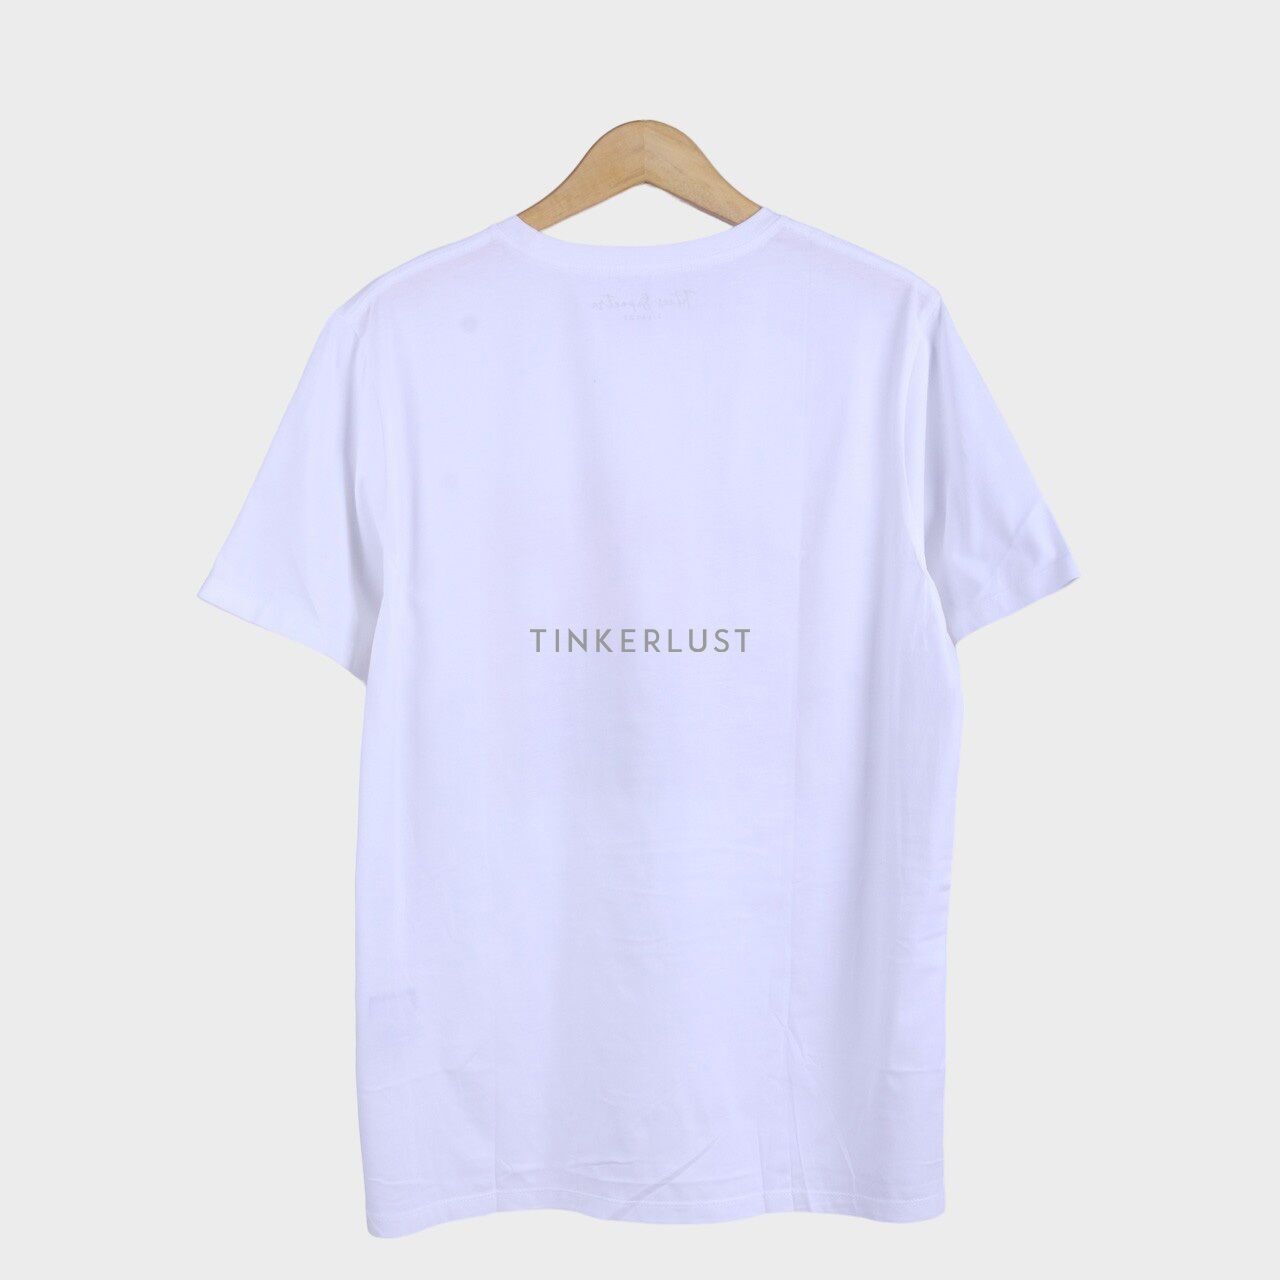 Tities Sapoetra White T-Shirt